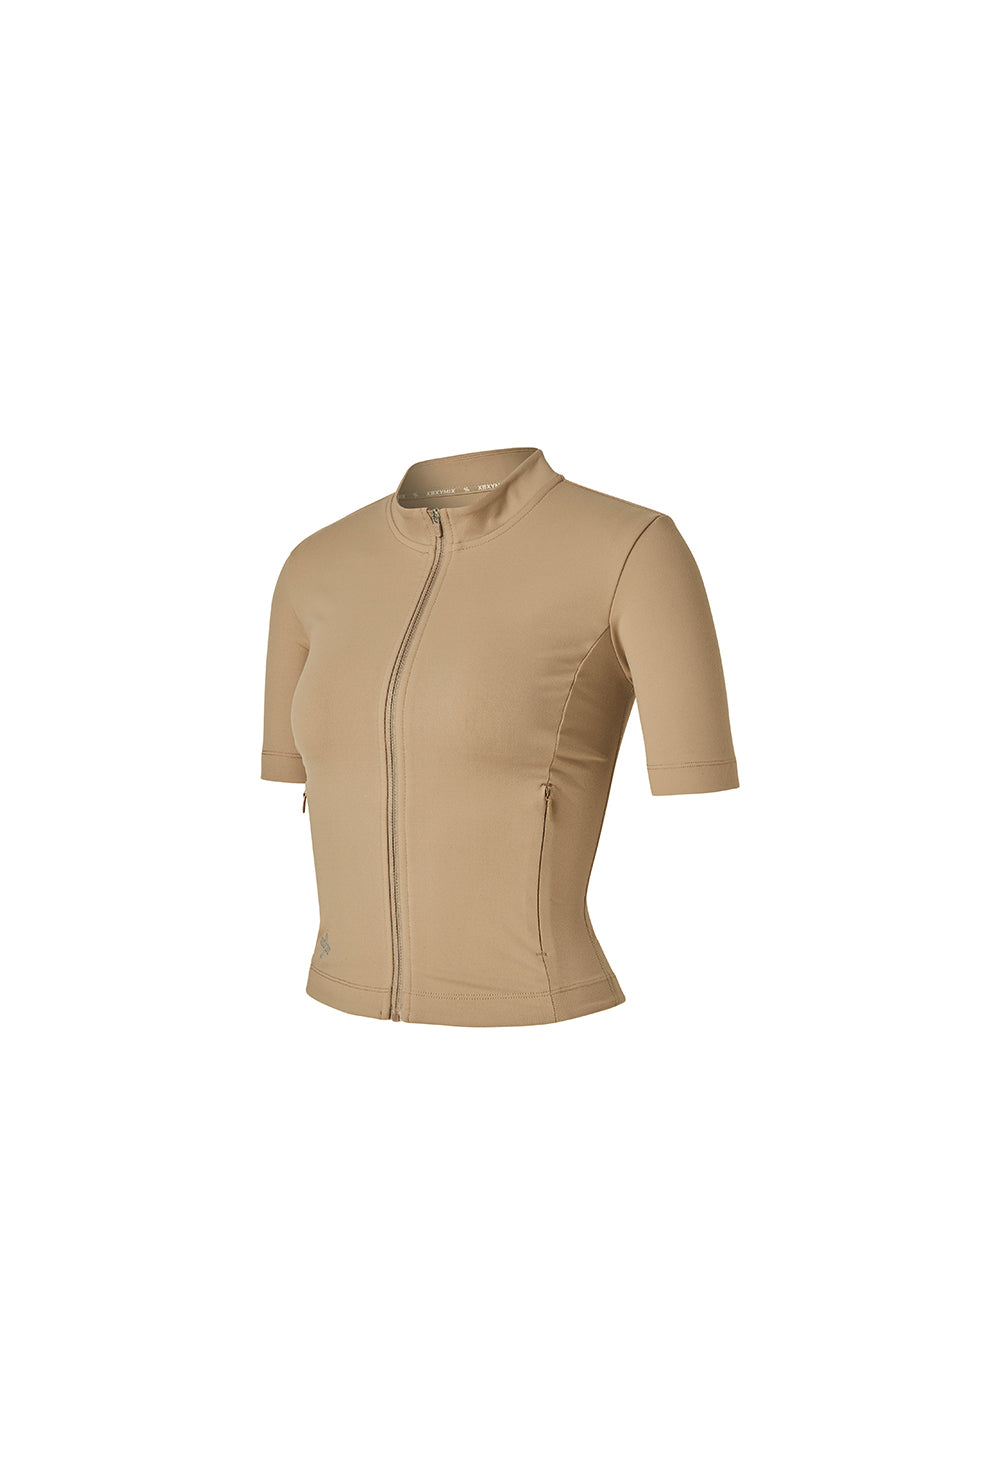 Slim Fit Crop Short Sleeve Zip-Up Jacket - Tan Beige